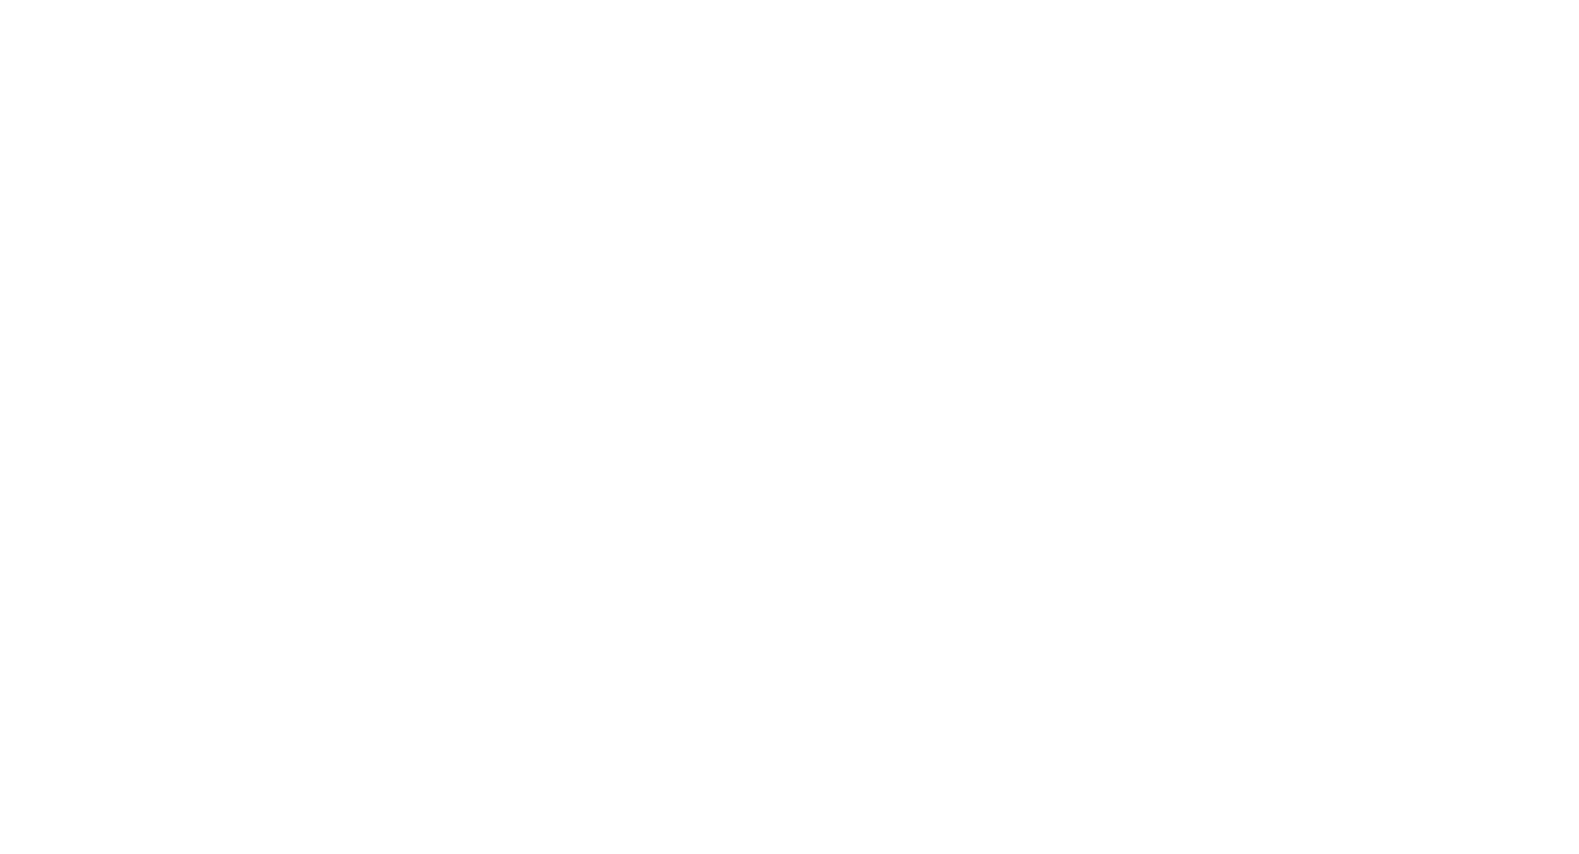 SSP Group logo large for dark backgrounds (transparent PNG)